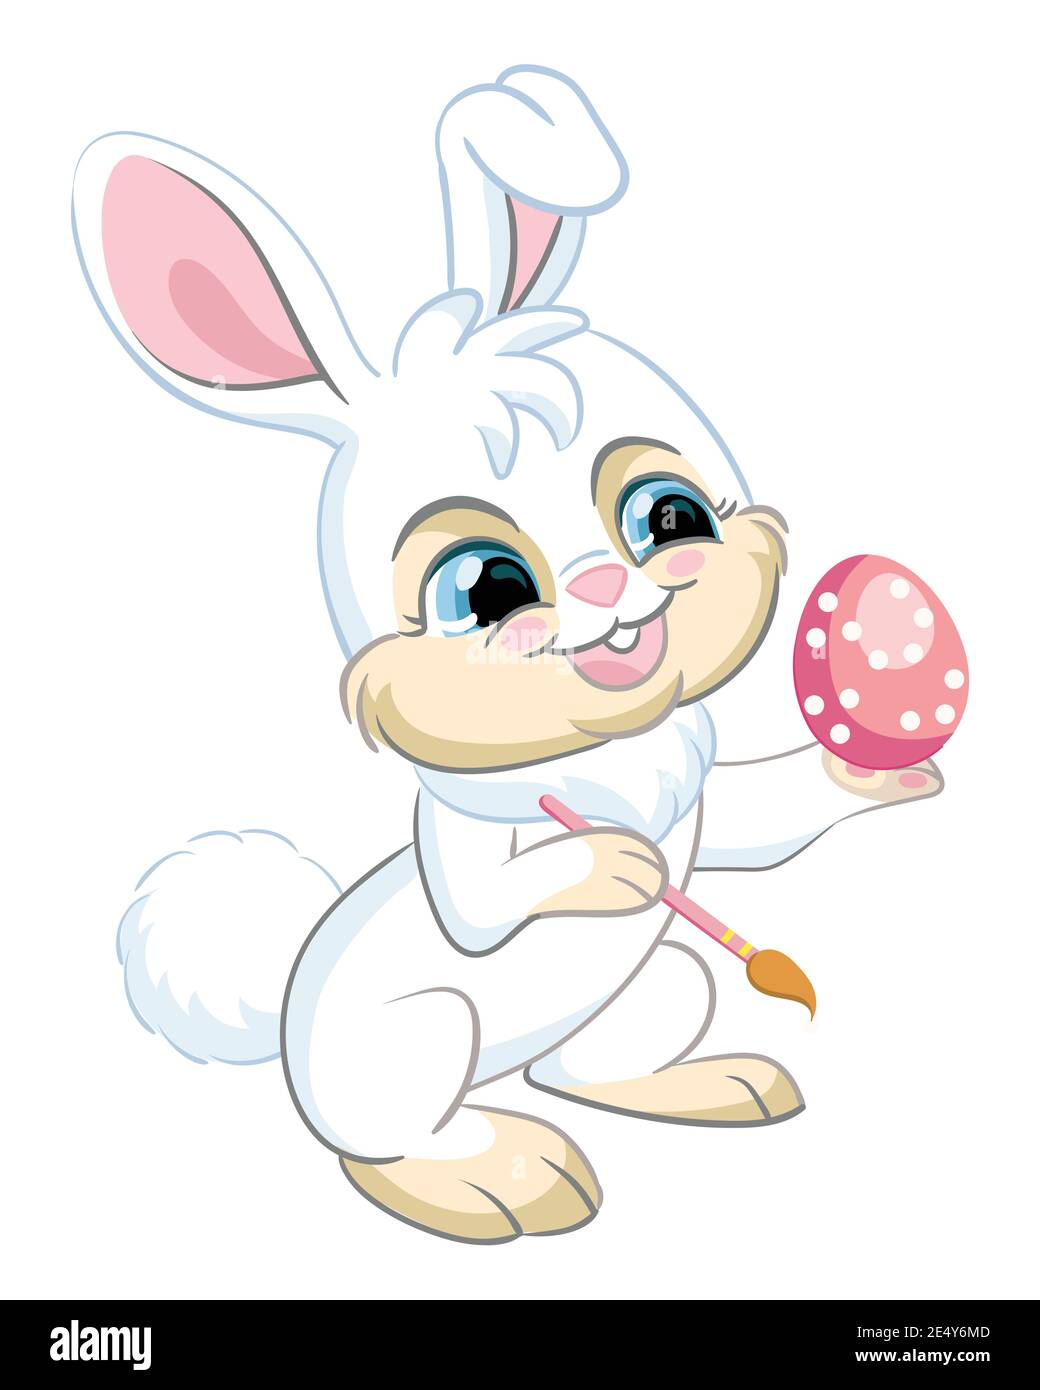 Lustige Cartoon Kaninchen malen Osterei. Niedliches Tier. Vektor-Illustration für Postkarte, Poster, Kinderzimmer-Design, Grußkarte, Aufkleber oder Raumgestaltung, Stock Vektor